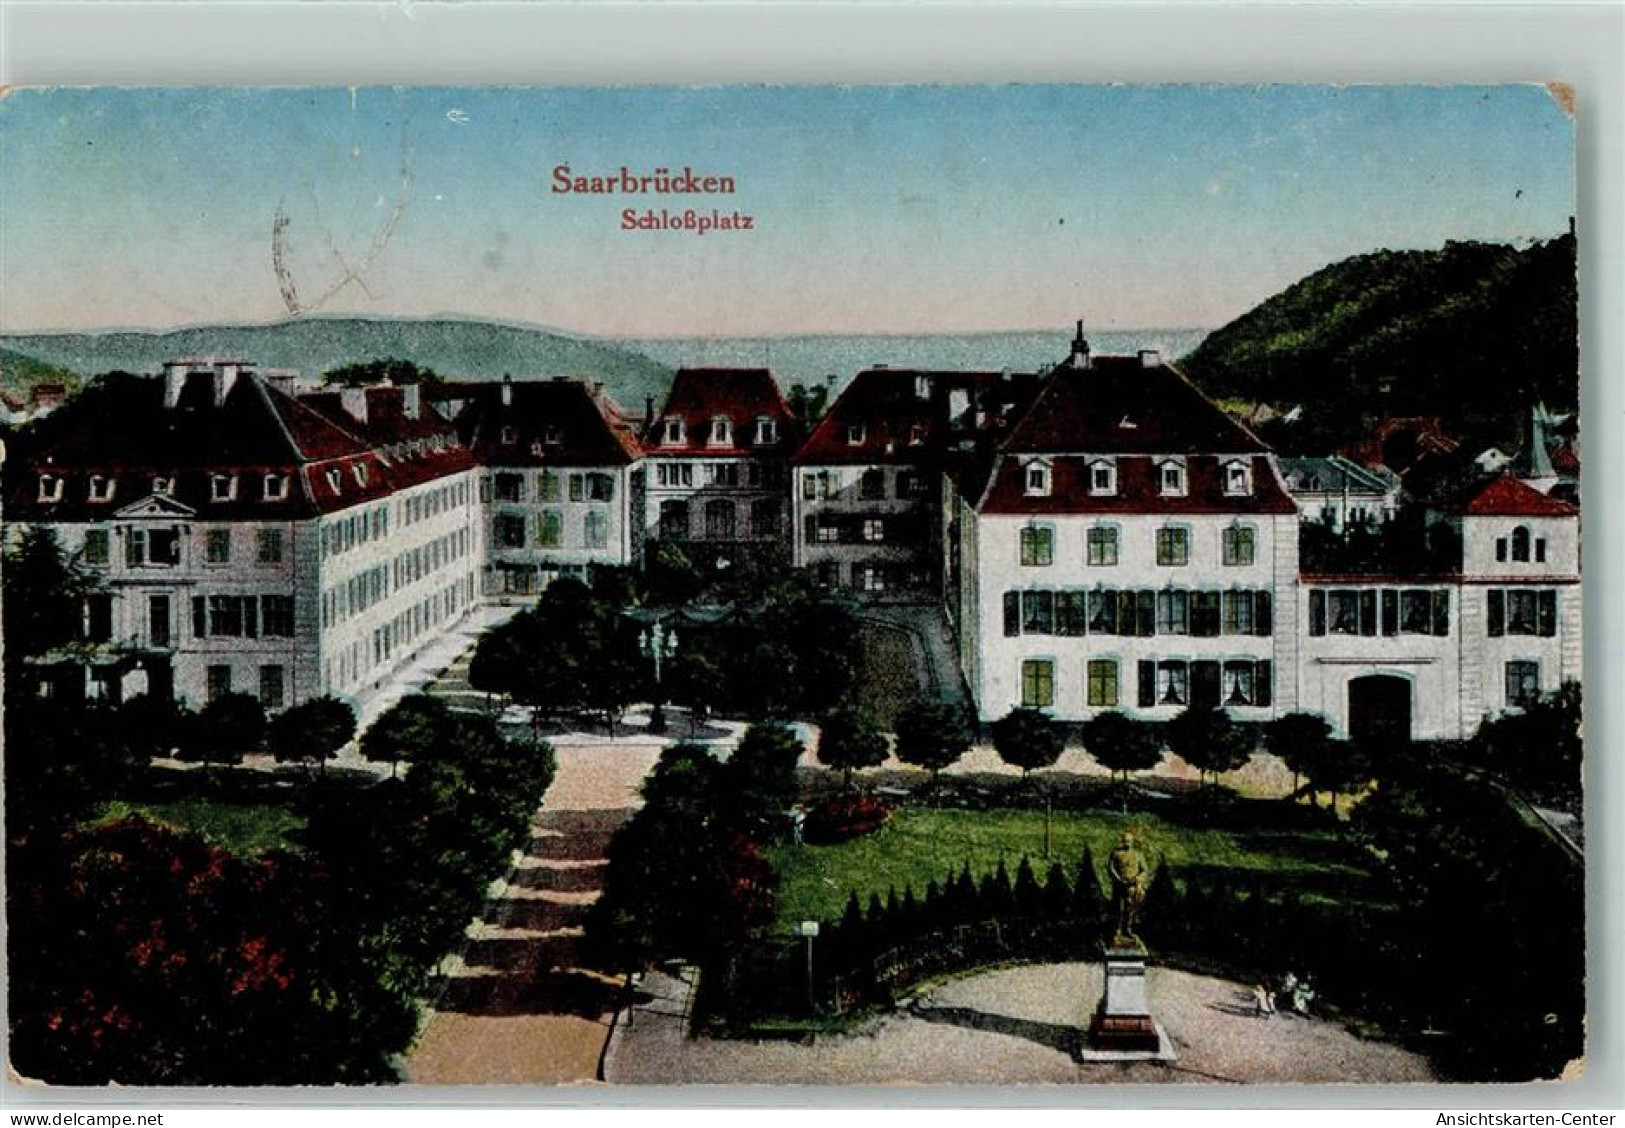 10487207 - Saarbruecken - Saarbruecken